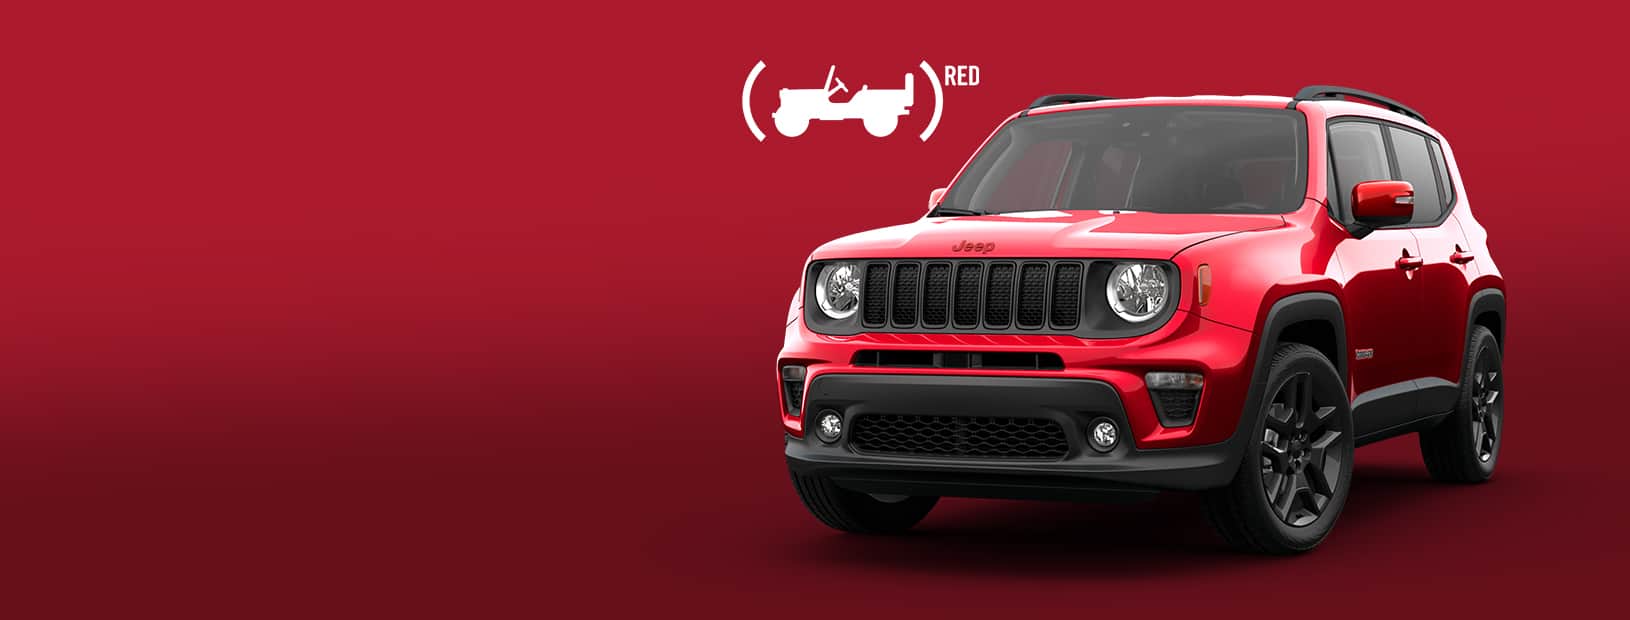 Logo de Jeep Red Edition y vista frontal de medio perfil del Jeep Red Edition Renegade 2022​​​​​​​.